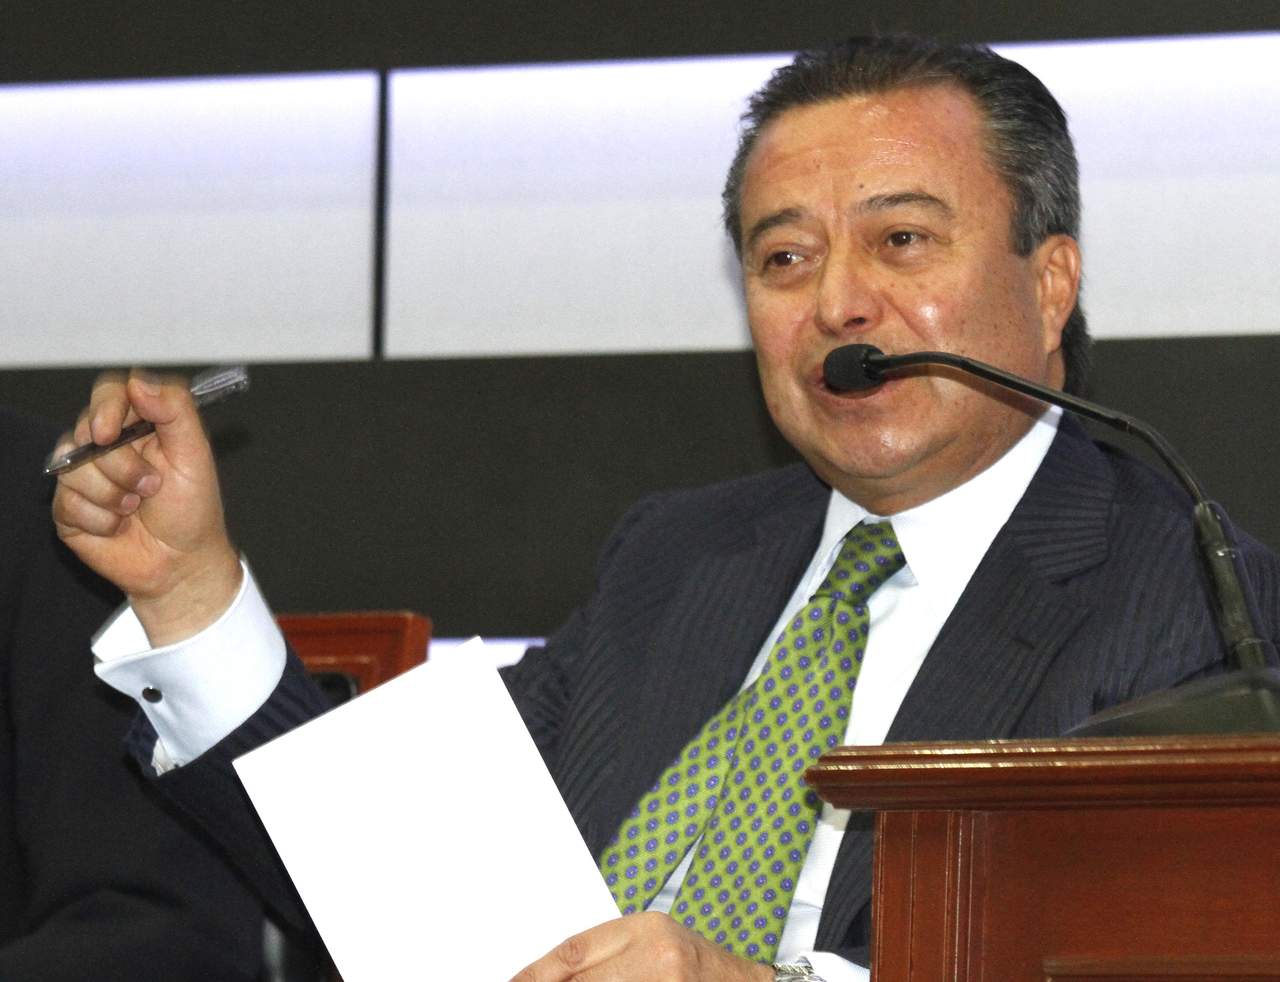 El legislador priista lamentó también que el político tabasqueño acuse sin razón a las fuerzas armadas que protegen a los mexicanos. (ARCHIVO)